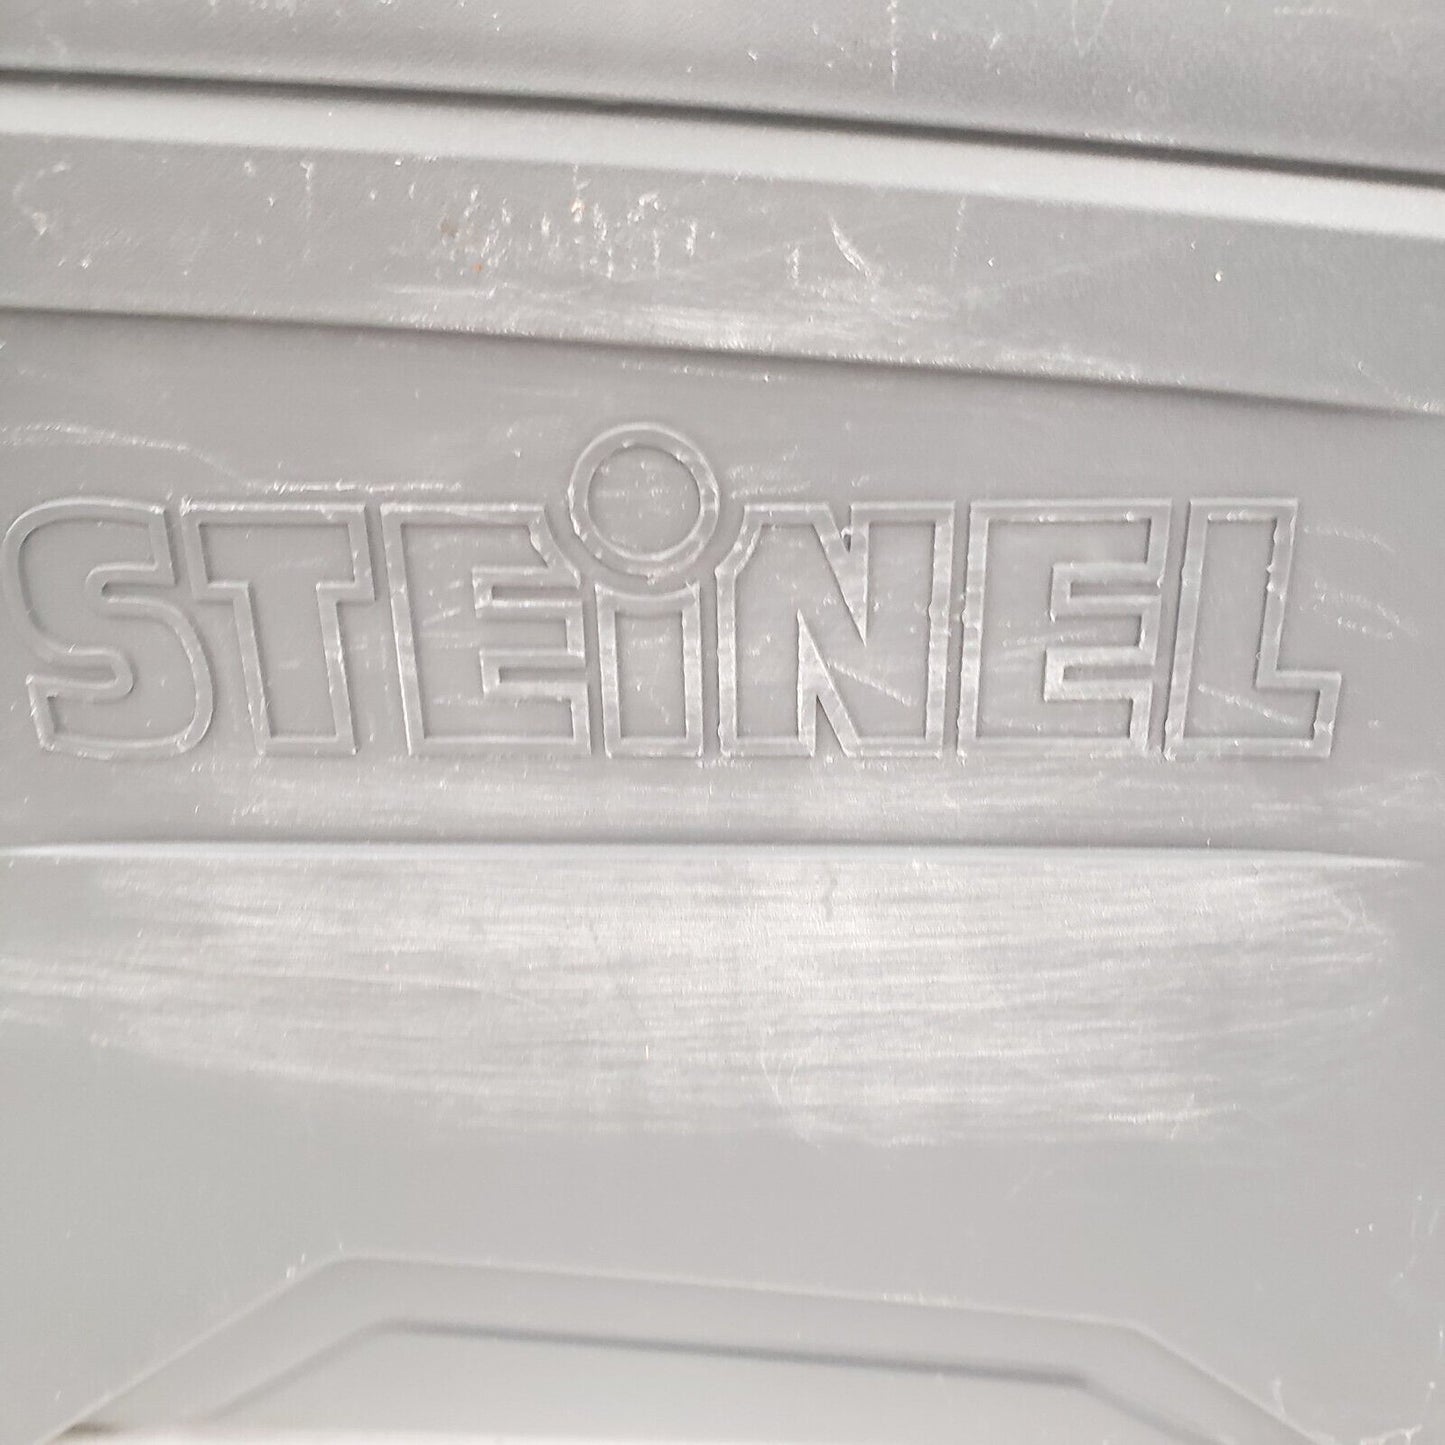 (54124-1) Steinel HG-2620E Welder